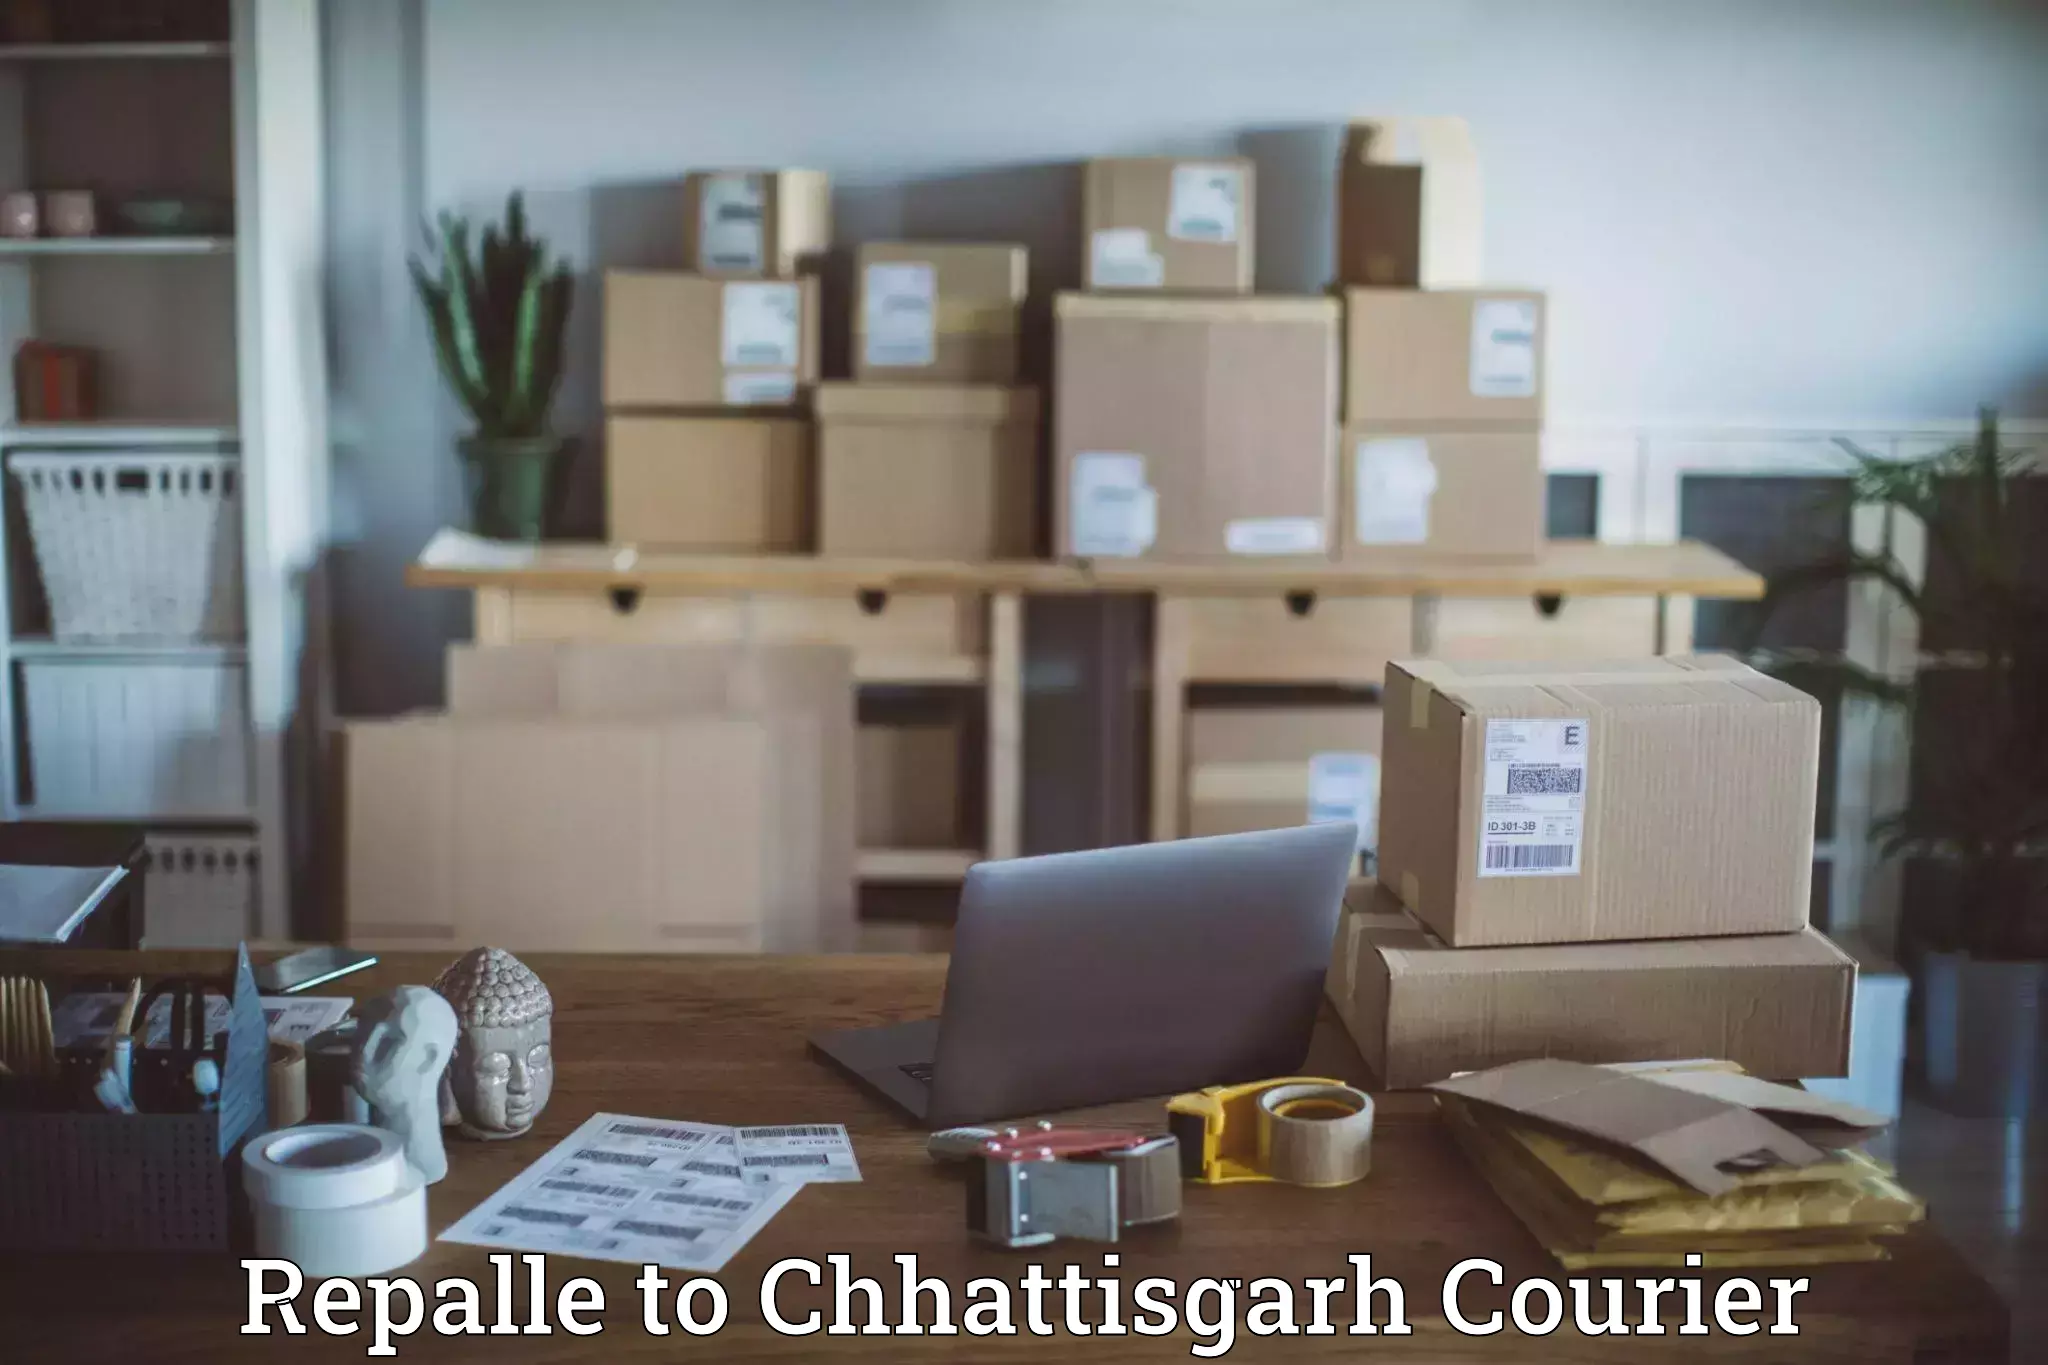 Smart logistics solutions Repalle to Chhattisgarh